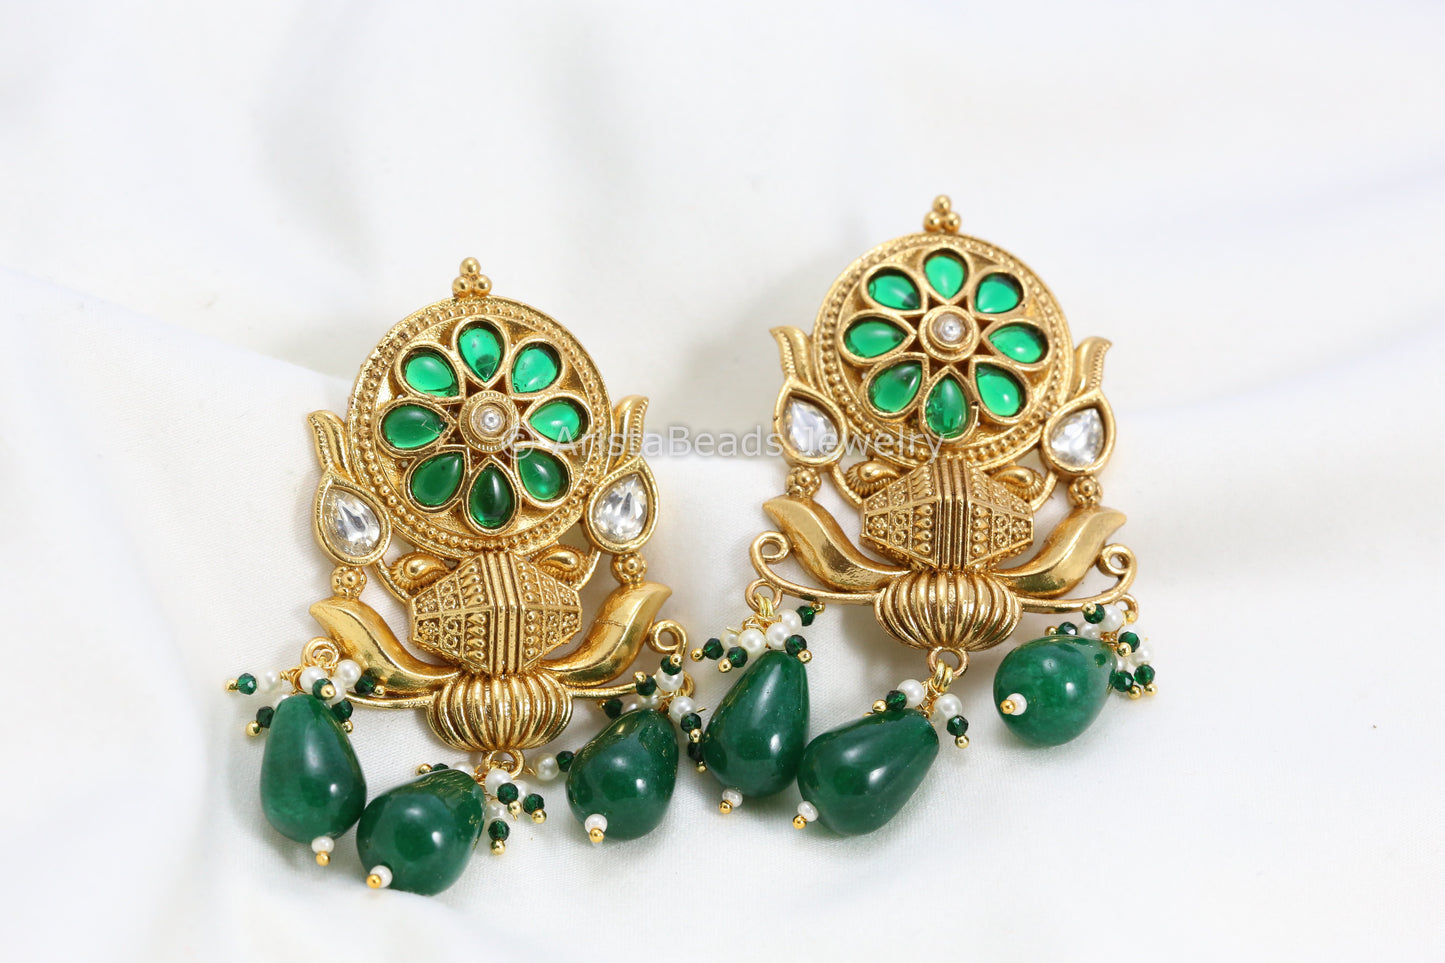 Silver Look-Alike Kundan Antique Gold Earrings - Green